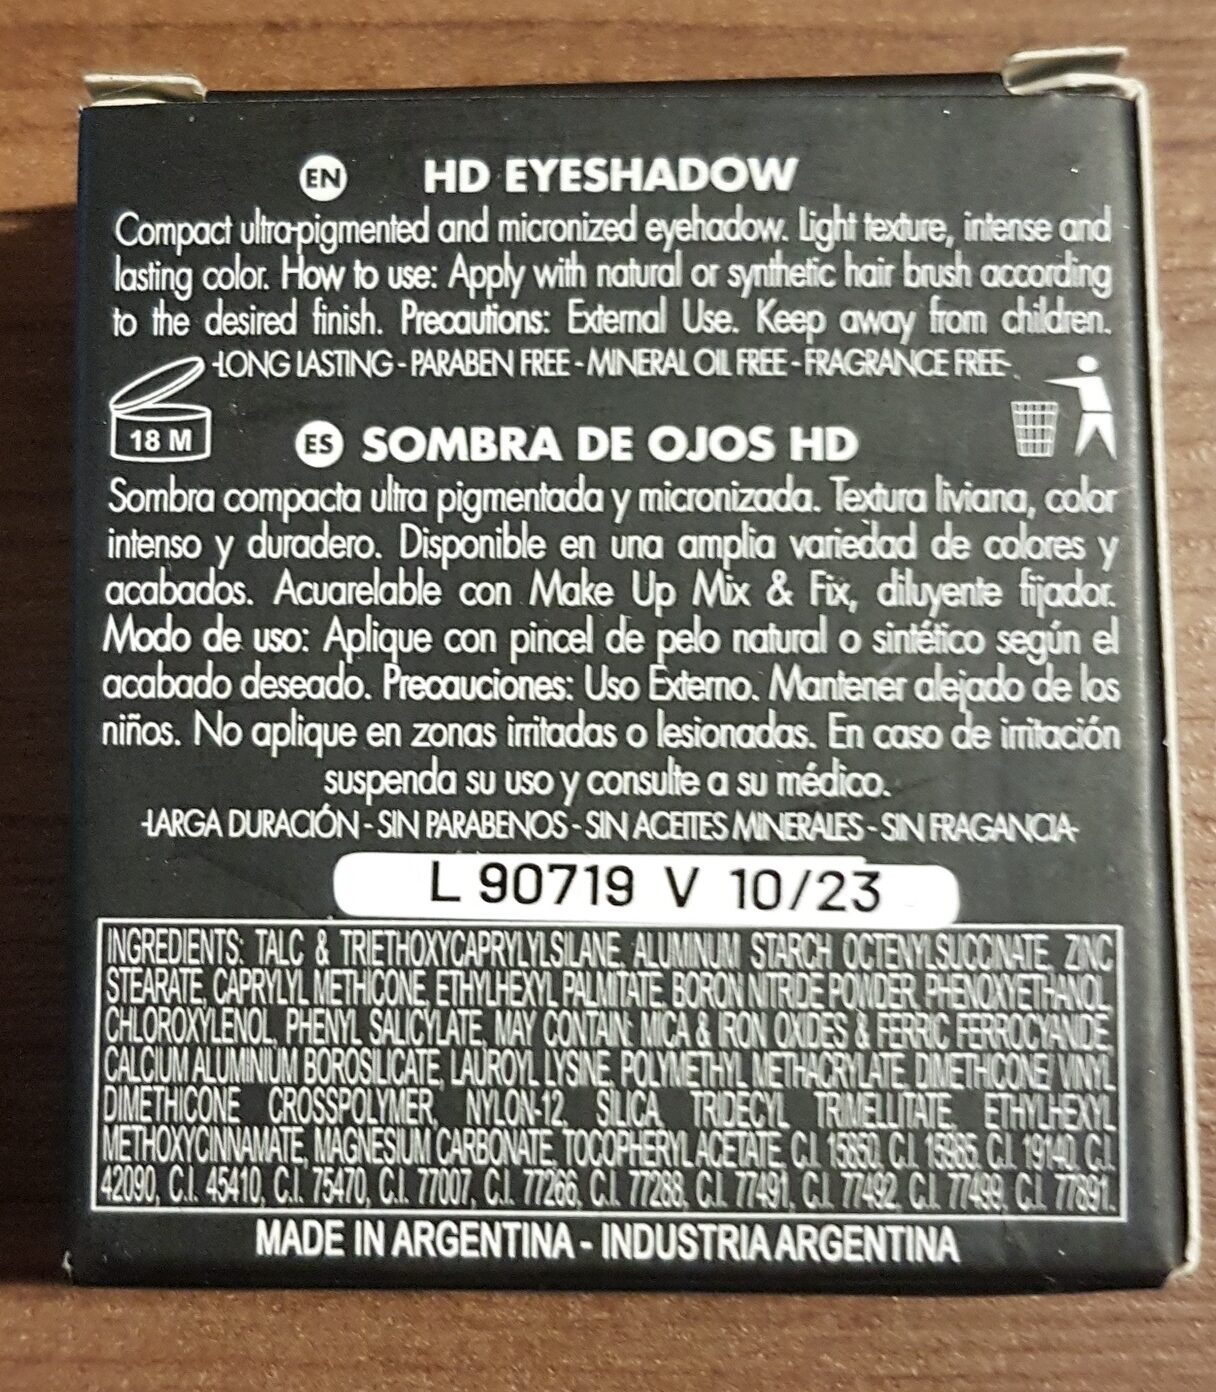 HD Eyeshadow - Ingredients - en